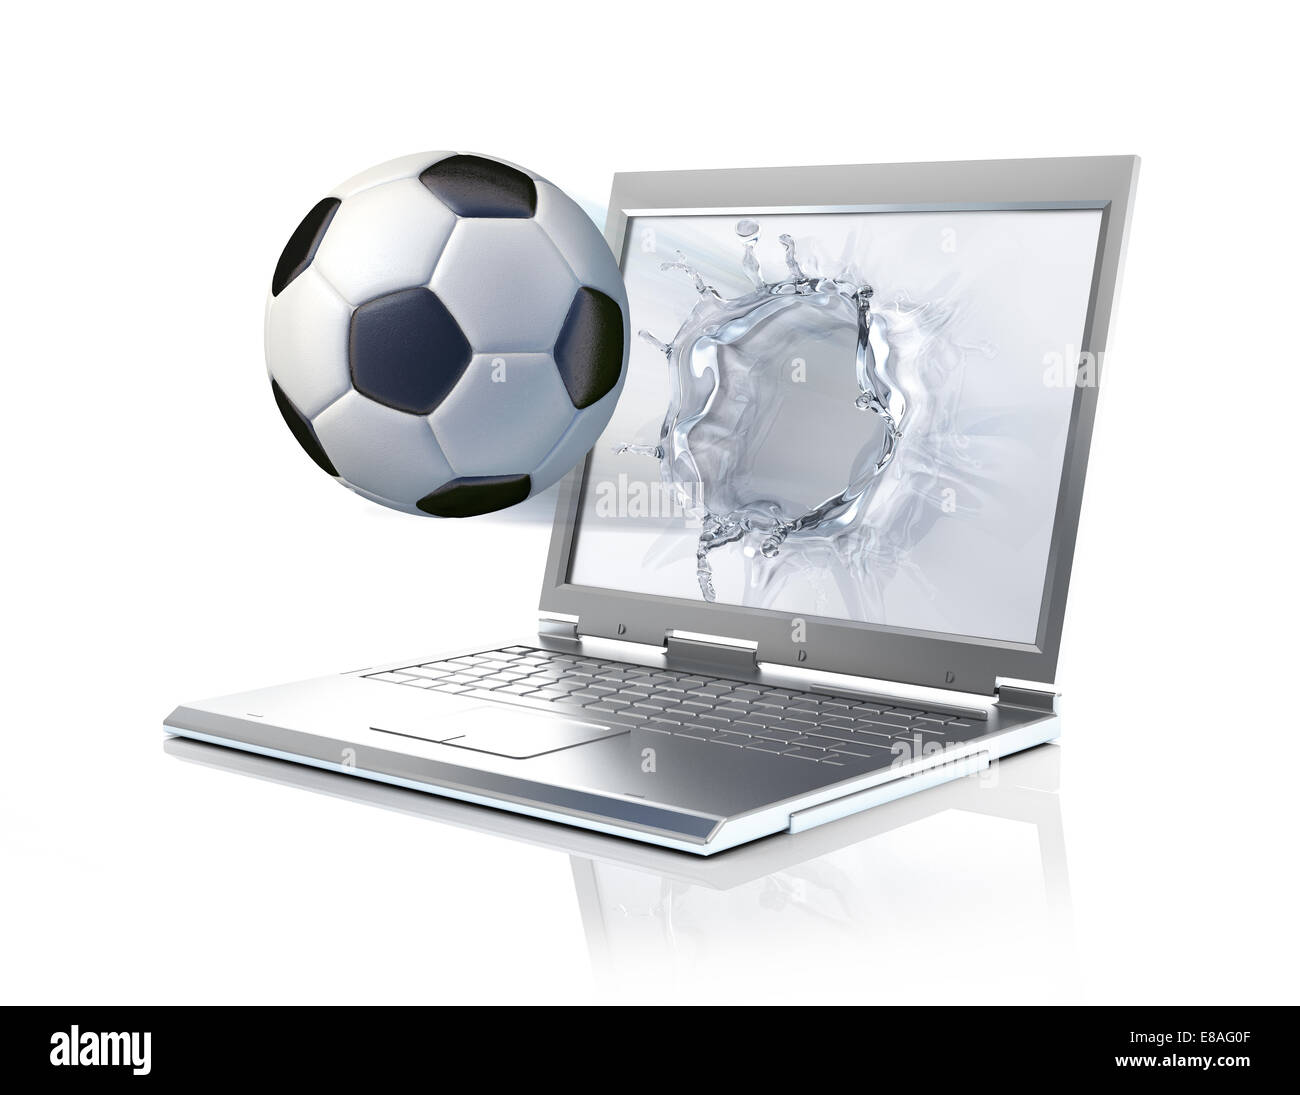 Balón de fútbol que sale desde un ordenador portátil, formando un líquido en la pantalla de bienvenida. Aislado sobre fondo blanco. Foto de stock